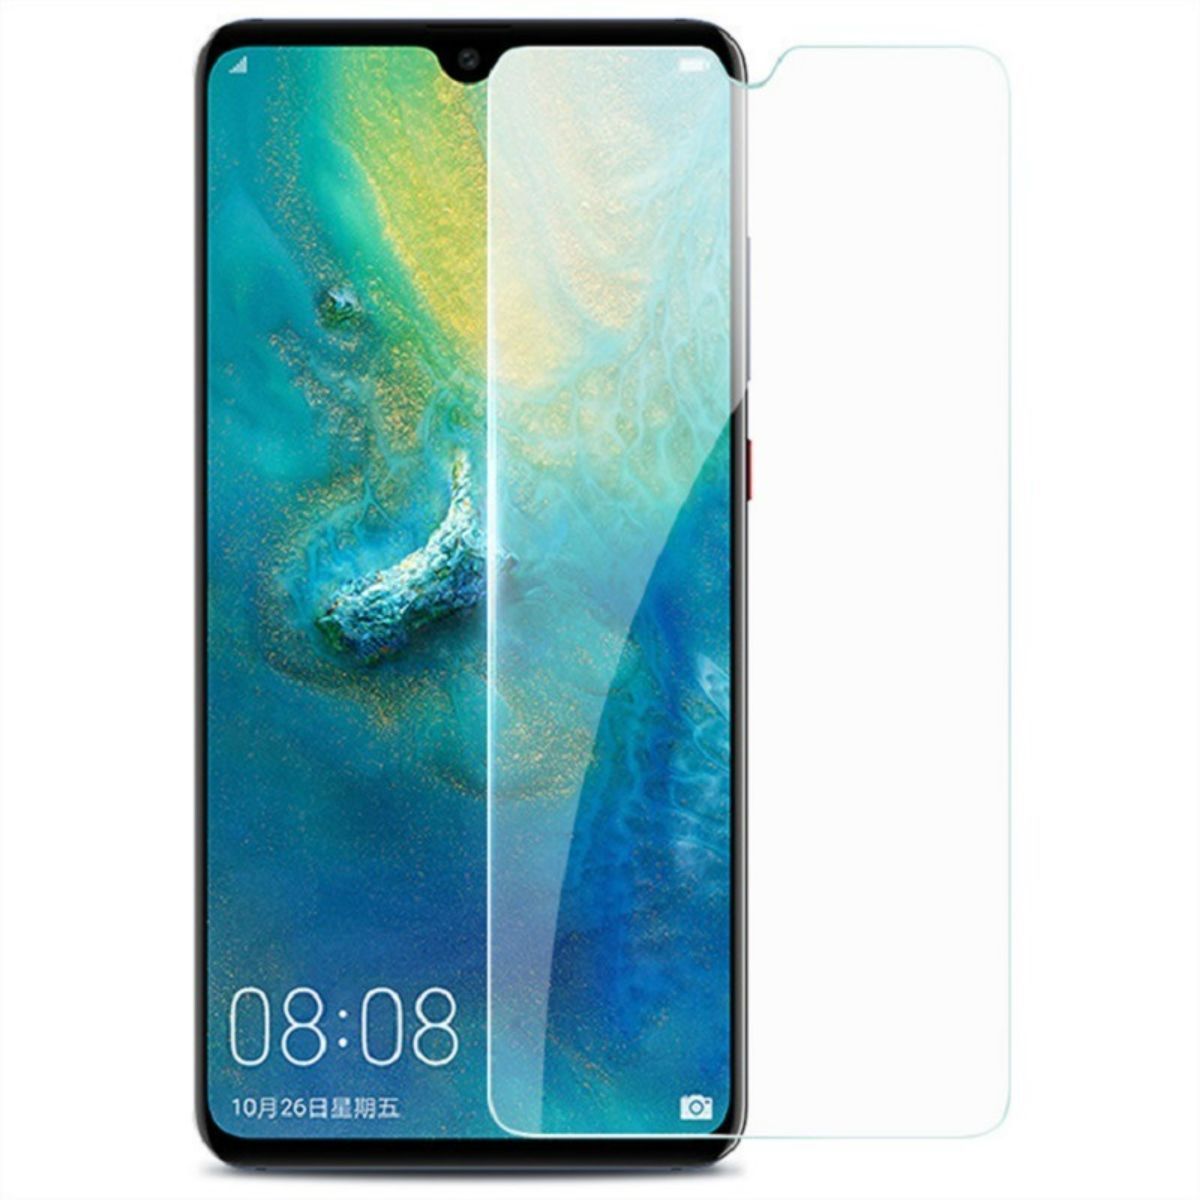 Huawei Y6 prime 2019